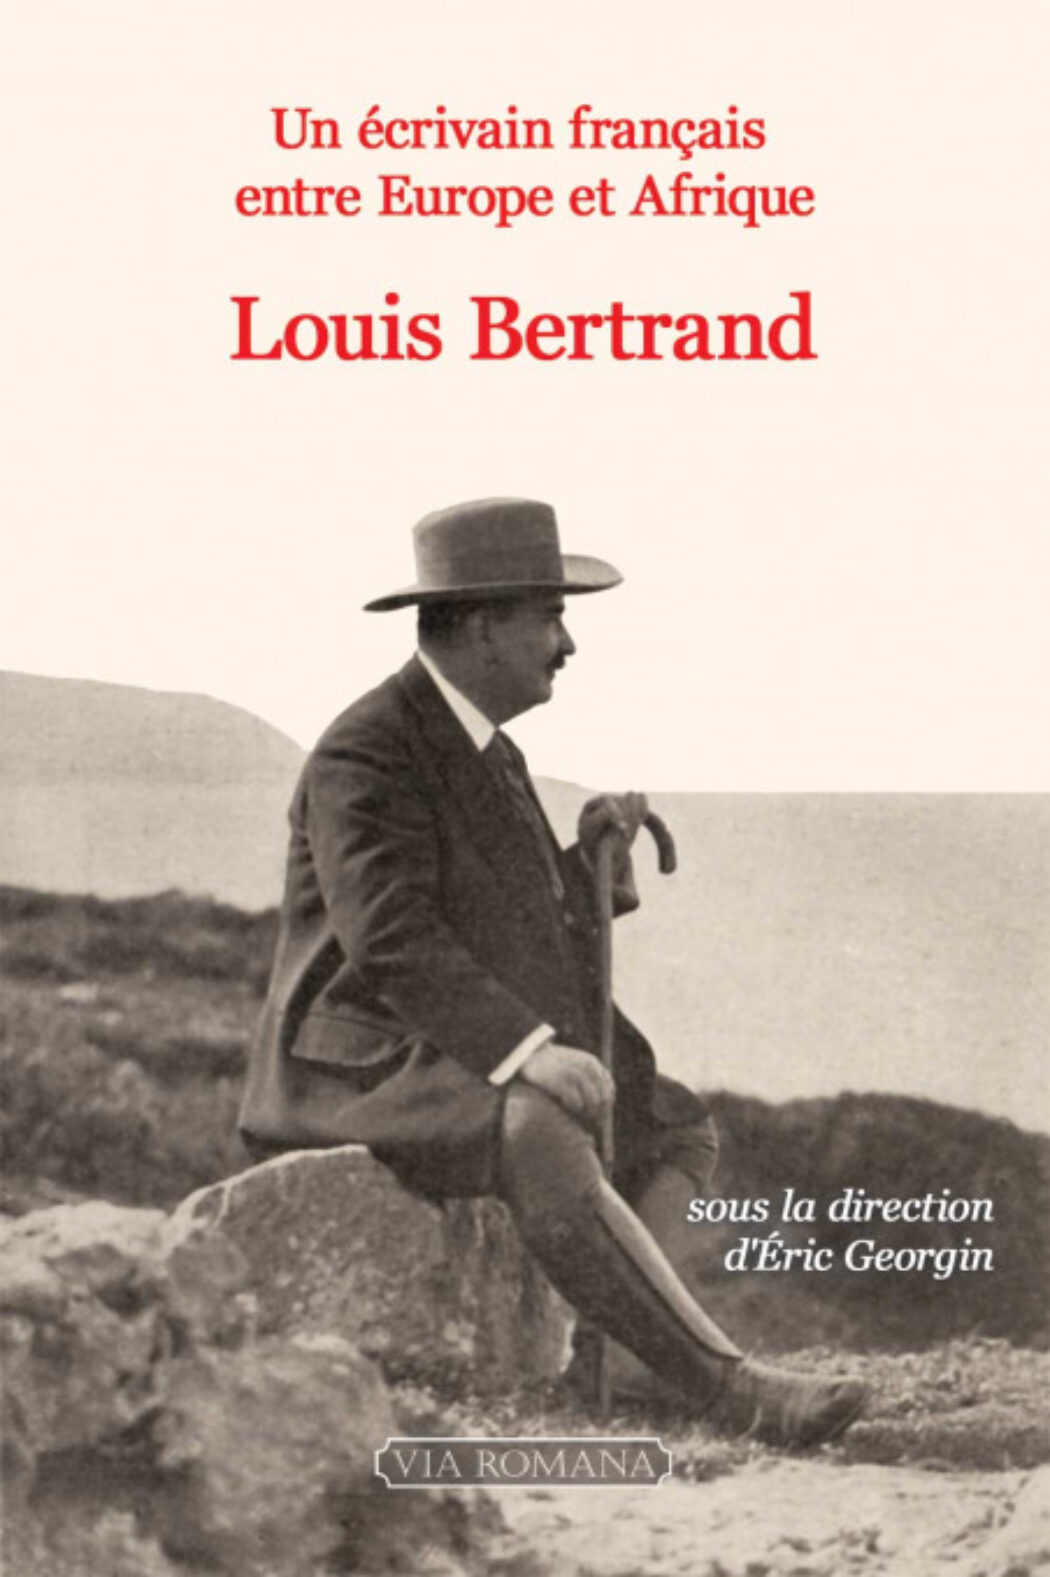 Louis Bertrand : la conversion politique et religieuse d’un écrivain